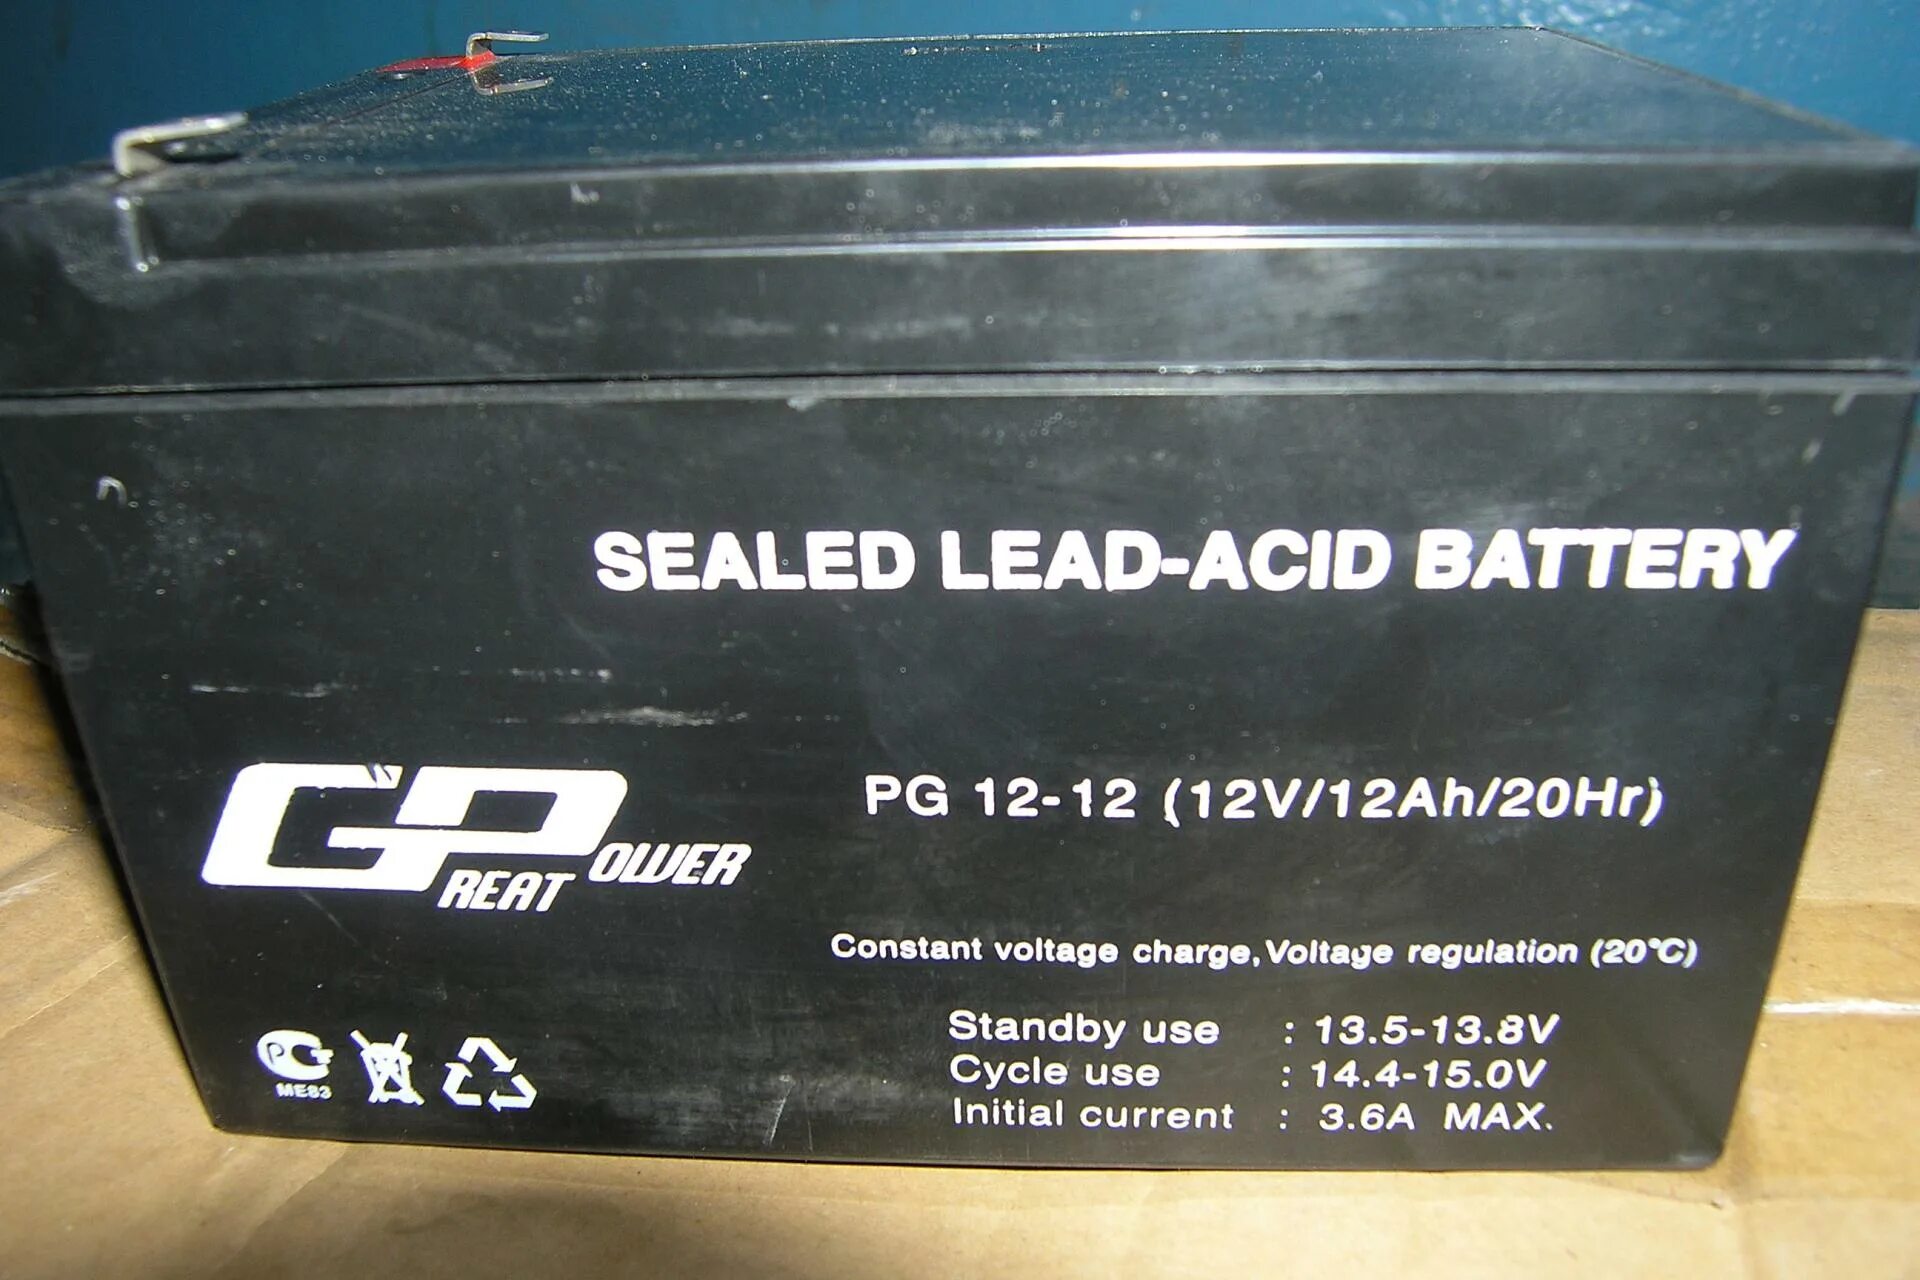 Аккумуляторная батарея Power great PG 12-7.2. Аккумуляторы типа «Sealed lead-acid Battery «pg12-12» (12v/12ah/20hr). Sealed lead-acid Battery 12v 100ah 20hr артикул. Sealed lead-acid Battery 12v PG 12.